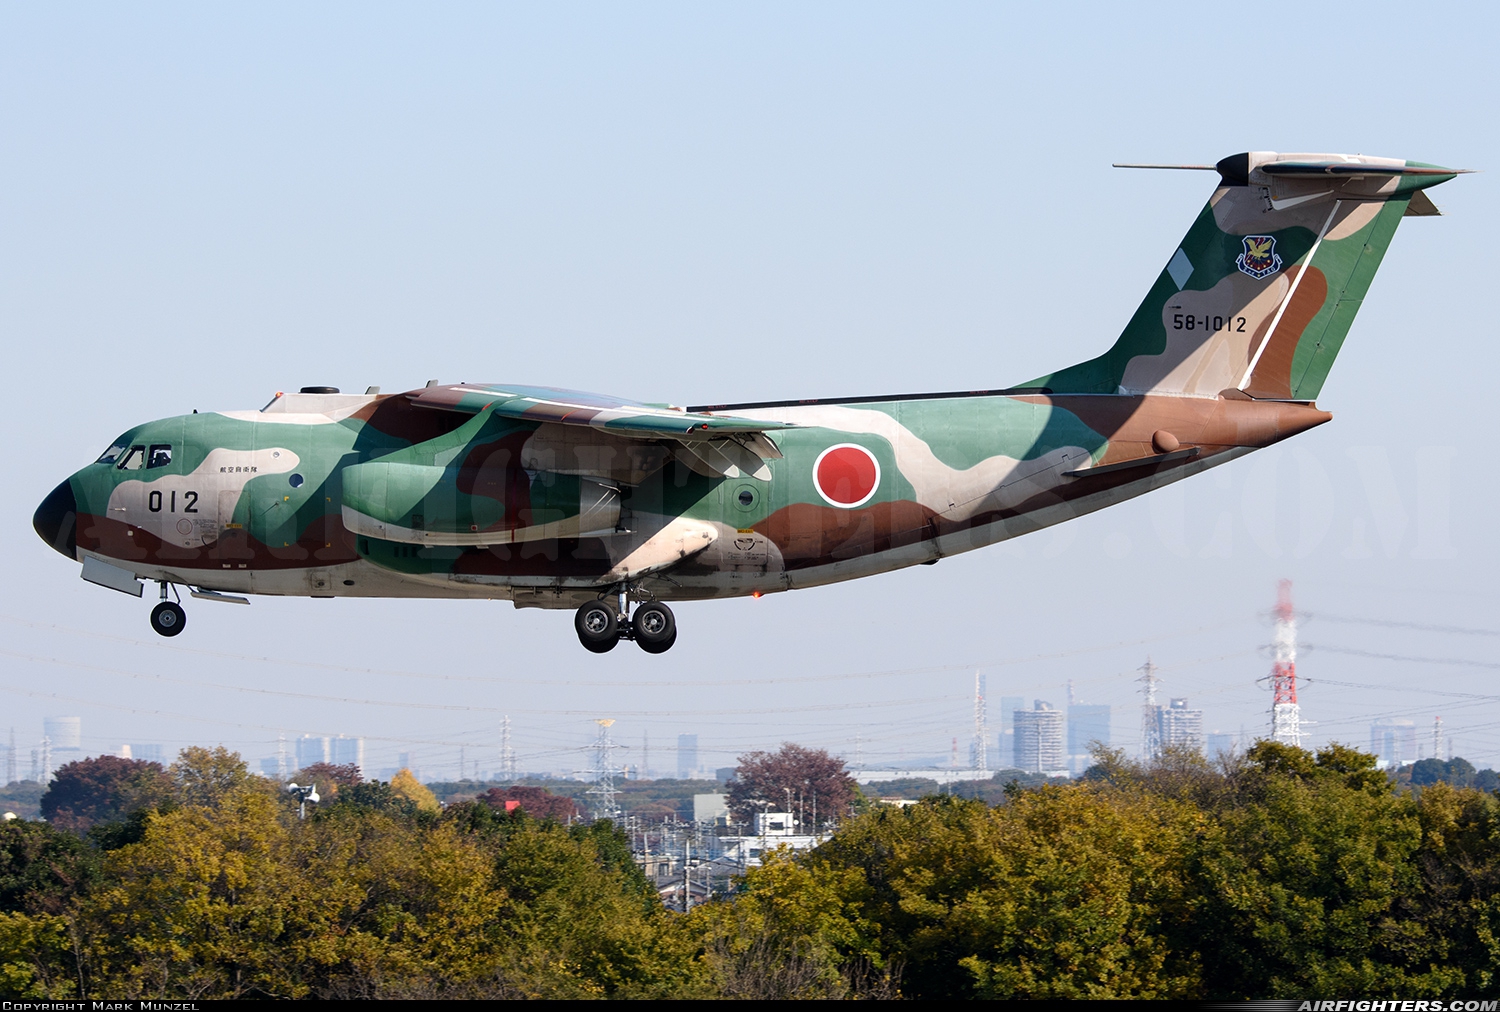 Japan - Air Force Kawasaki C-1 58-1012 at Iruma (RJTJ), Japan